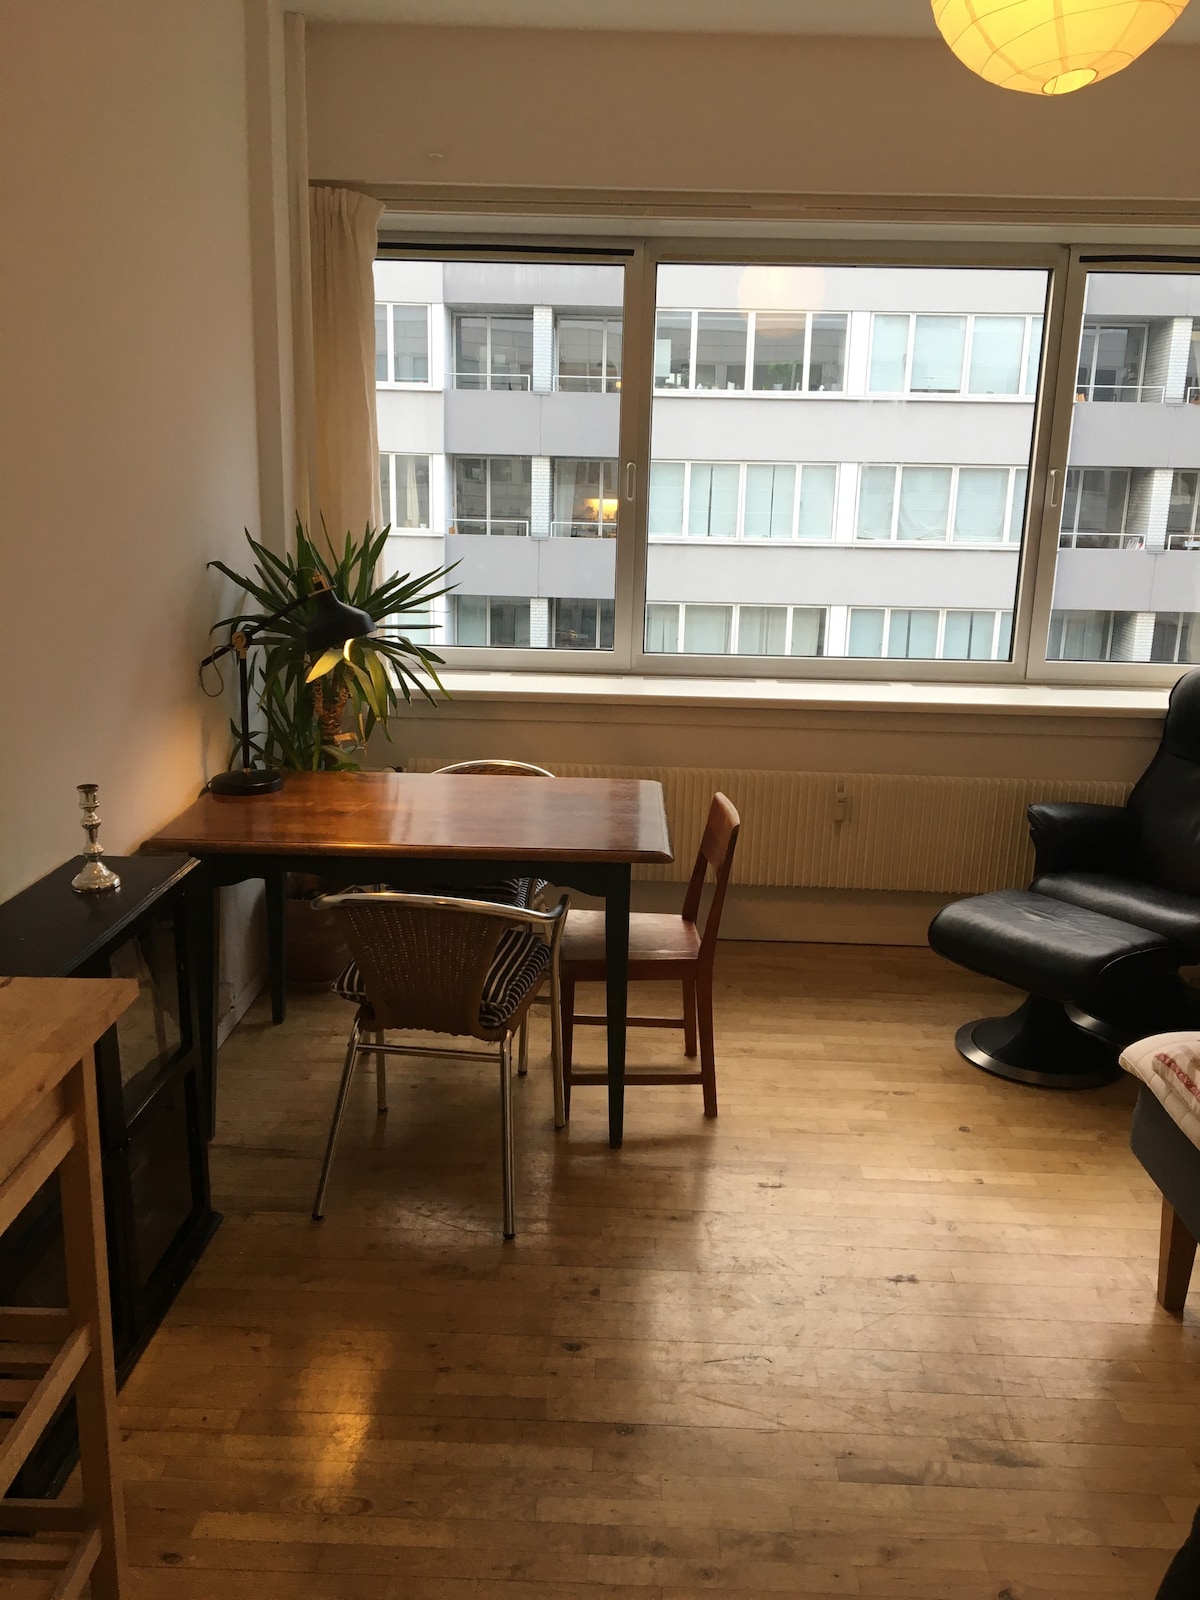 位于哥本哈根Østerbro的漂亮舒适公寓。